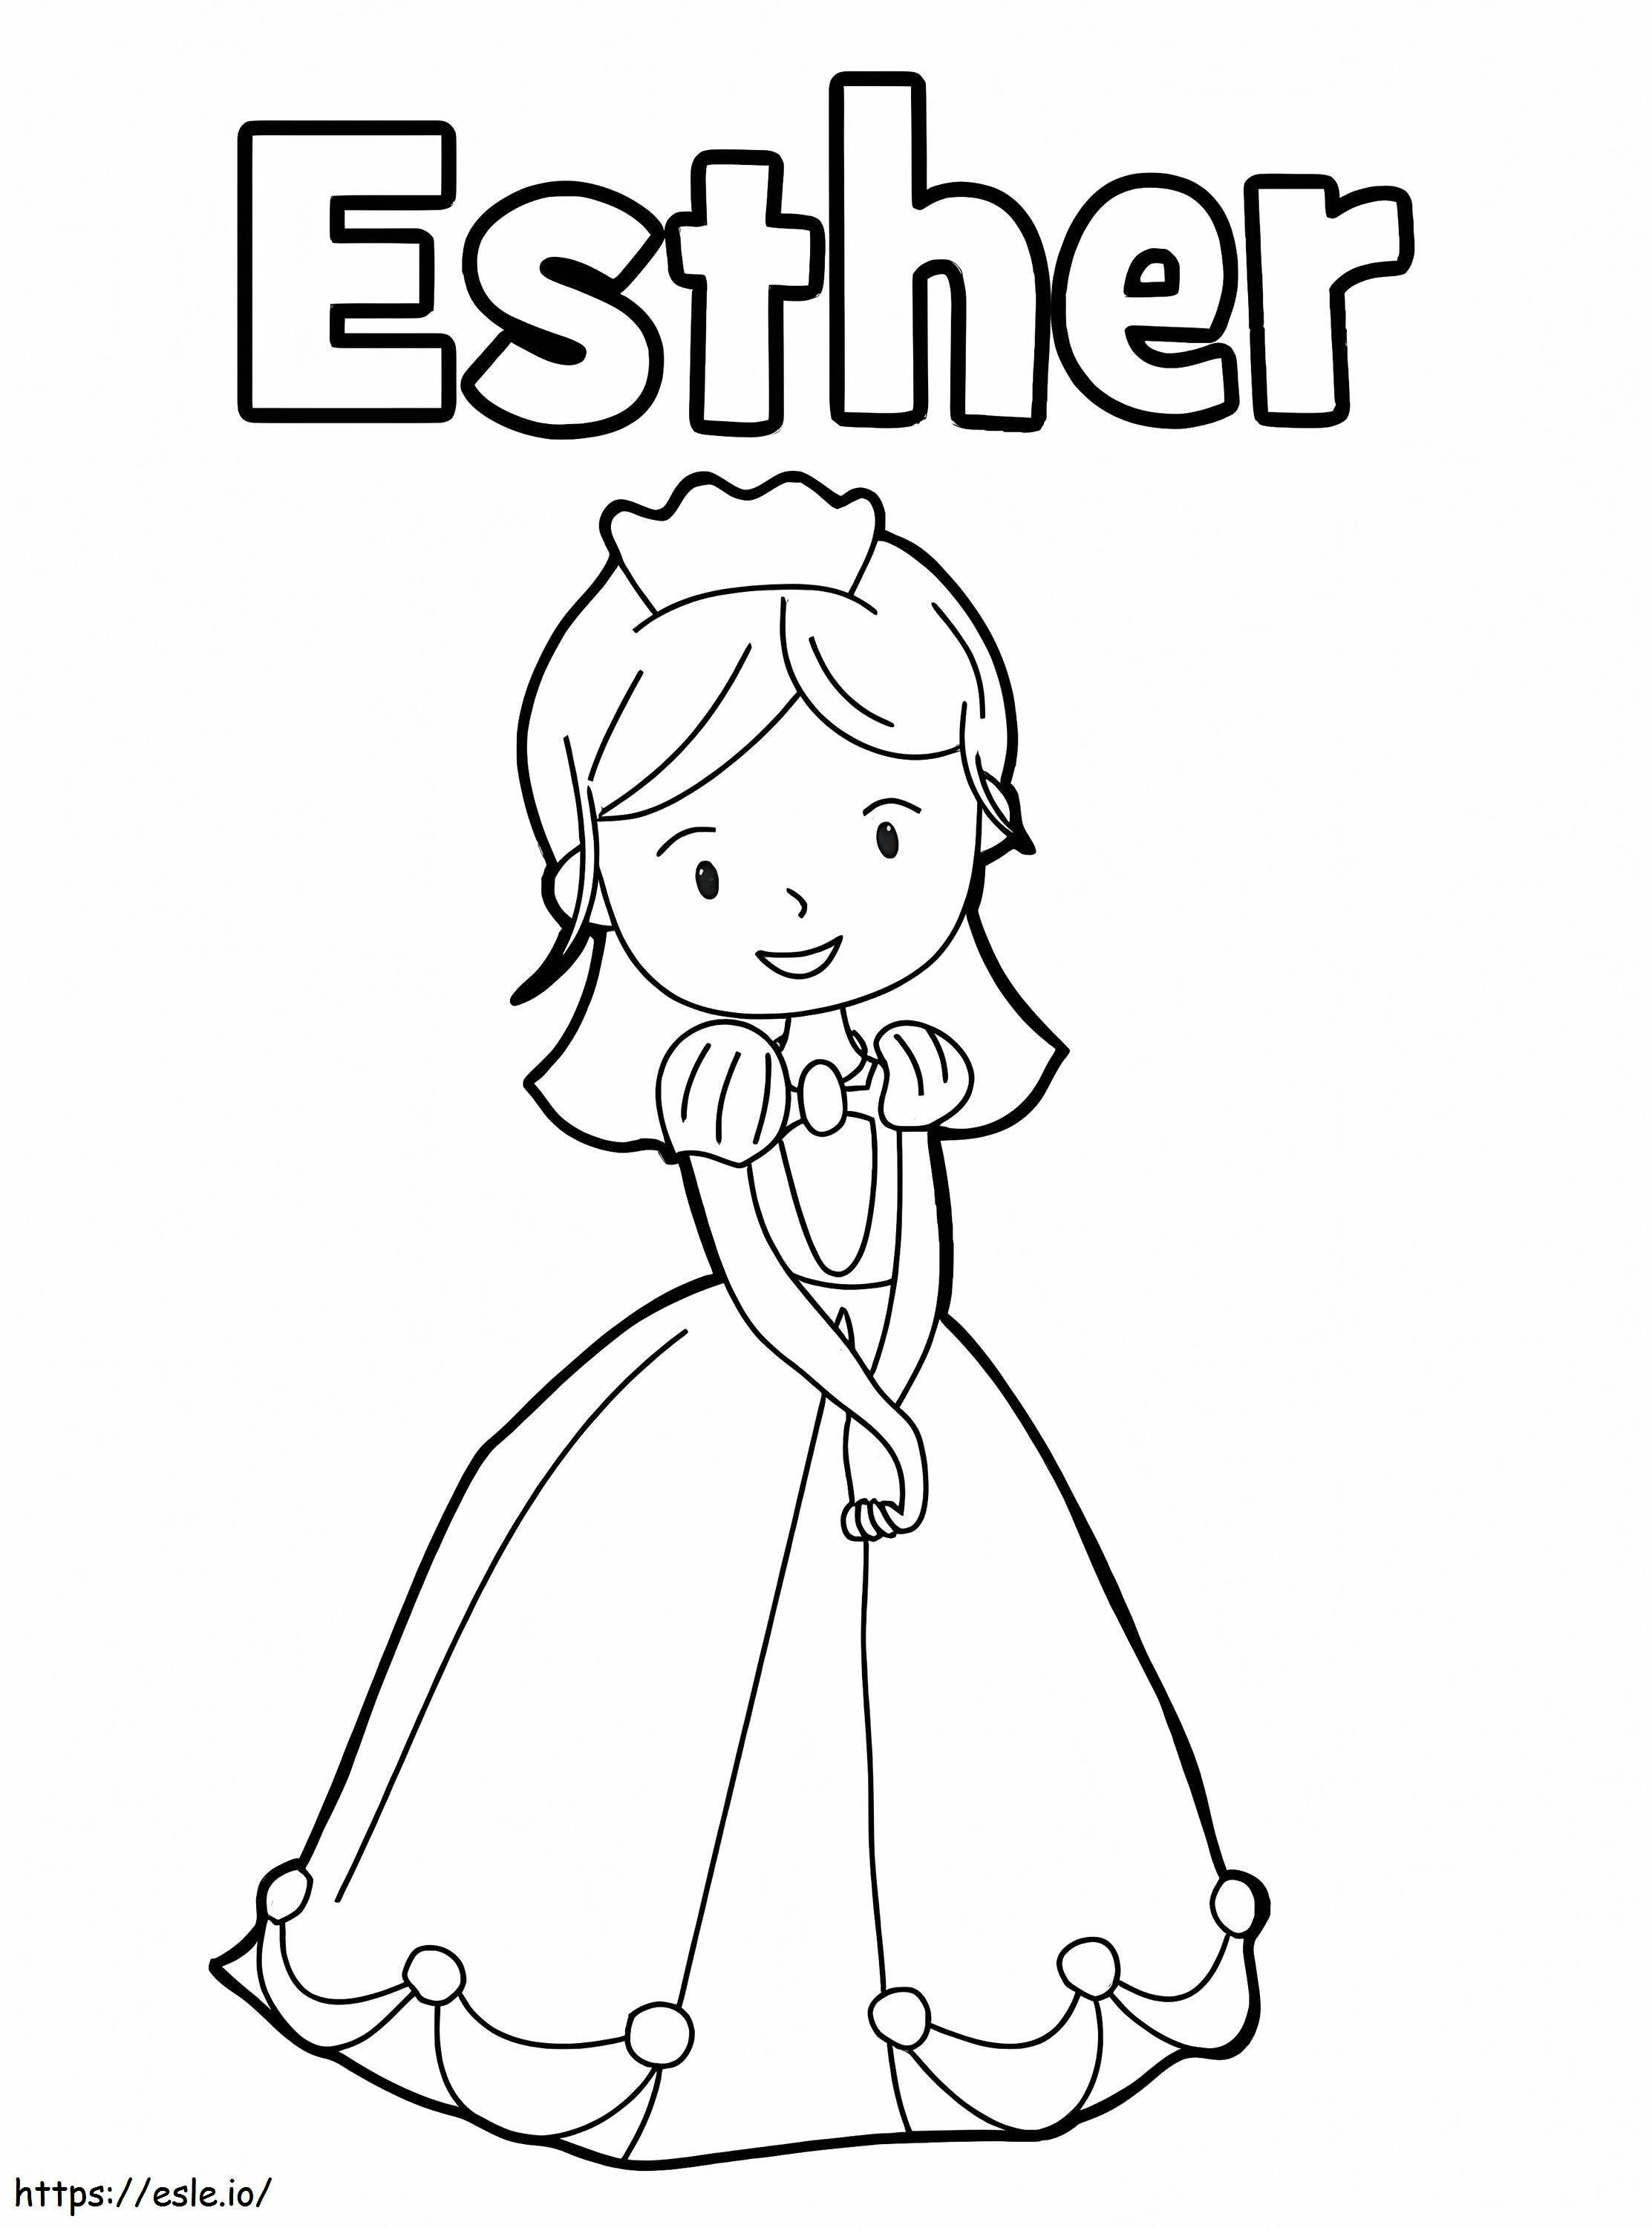 Rainha Ester 9 para colorir